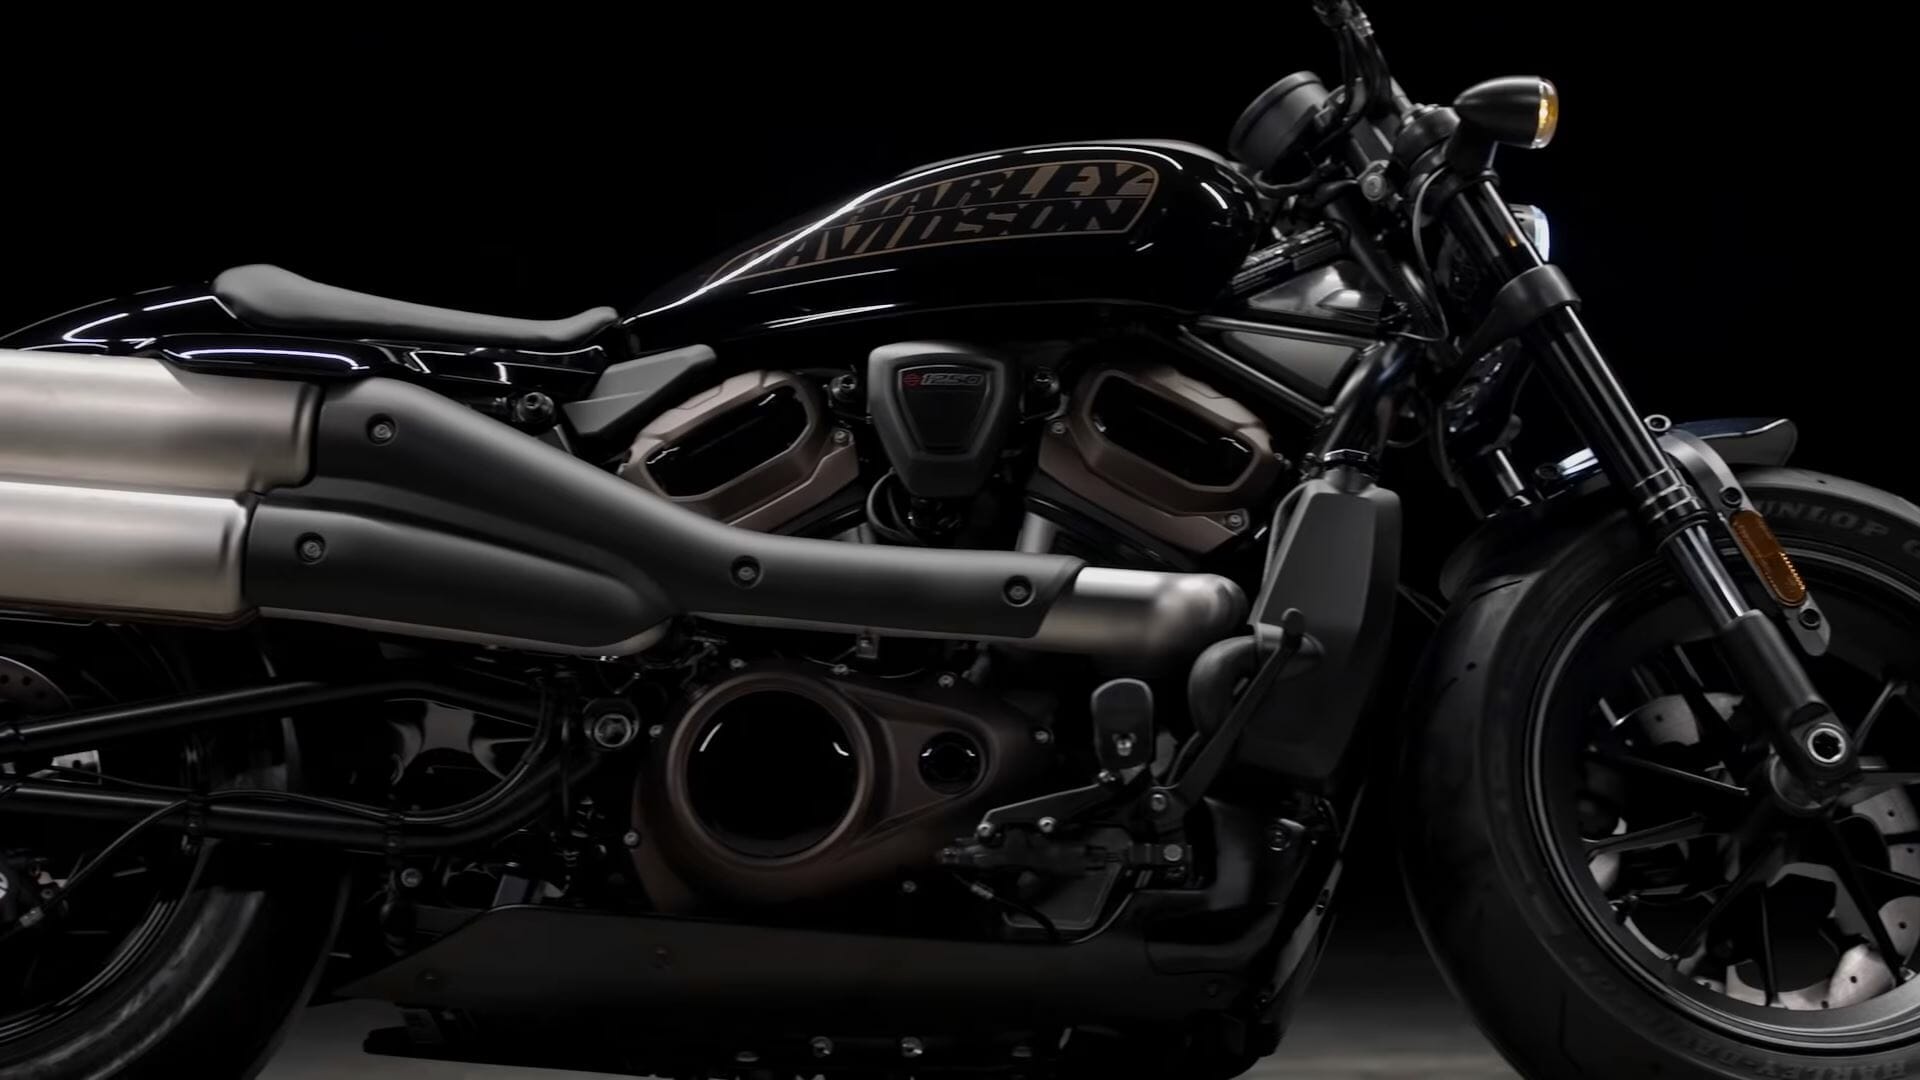 Harley zeigt kommende 1250 Custom in Pan America Video
- auch in der MOTORRAD NACHRICHTEN APP